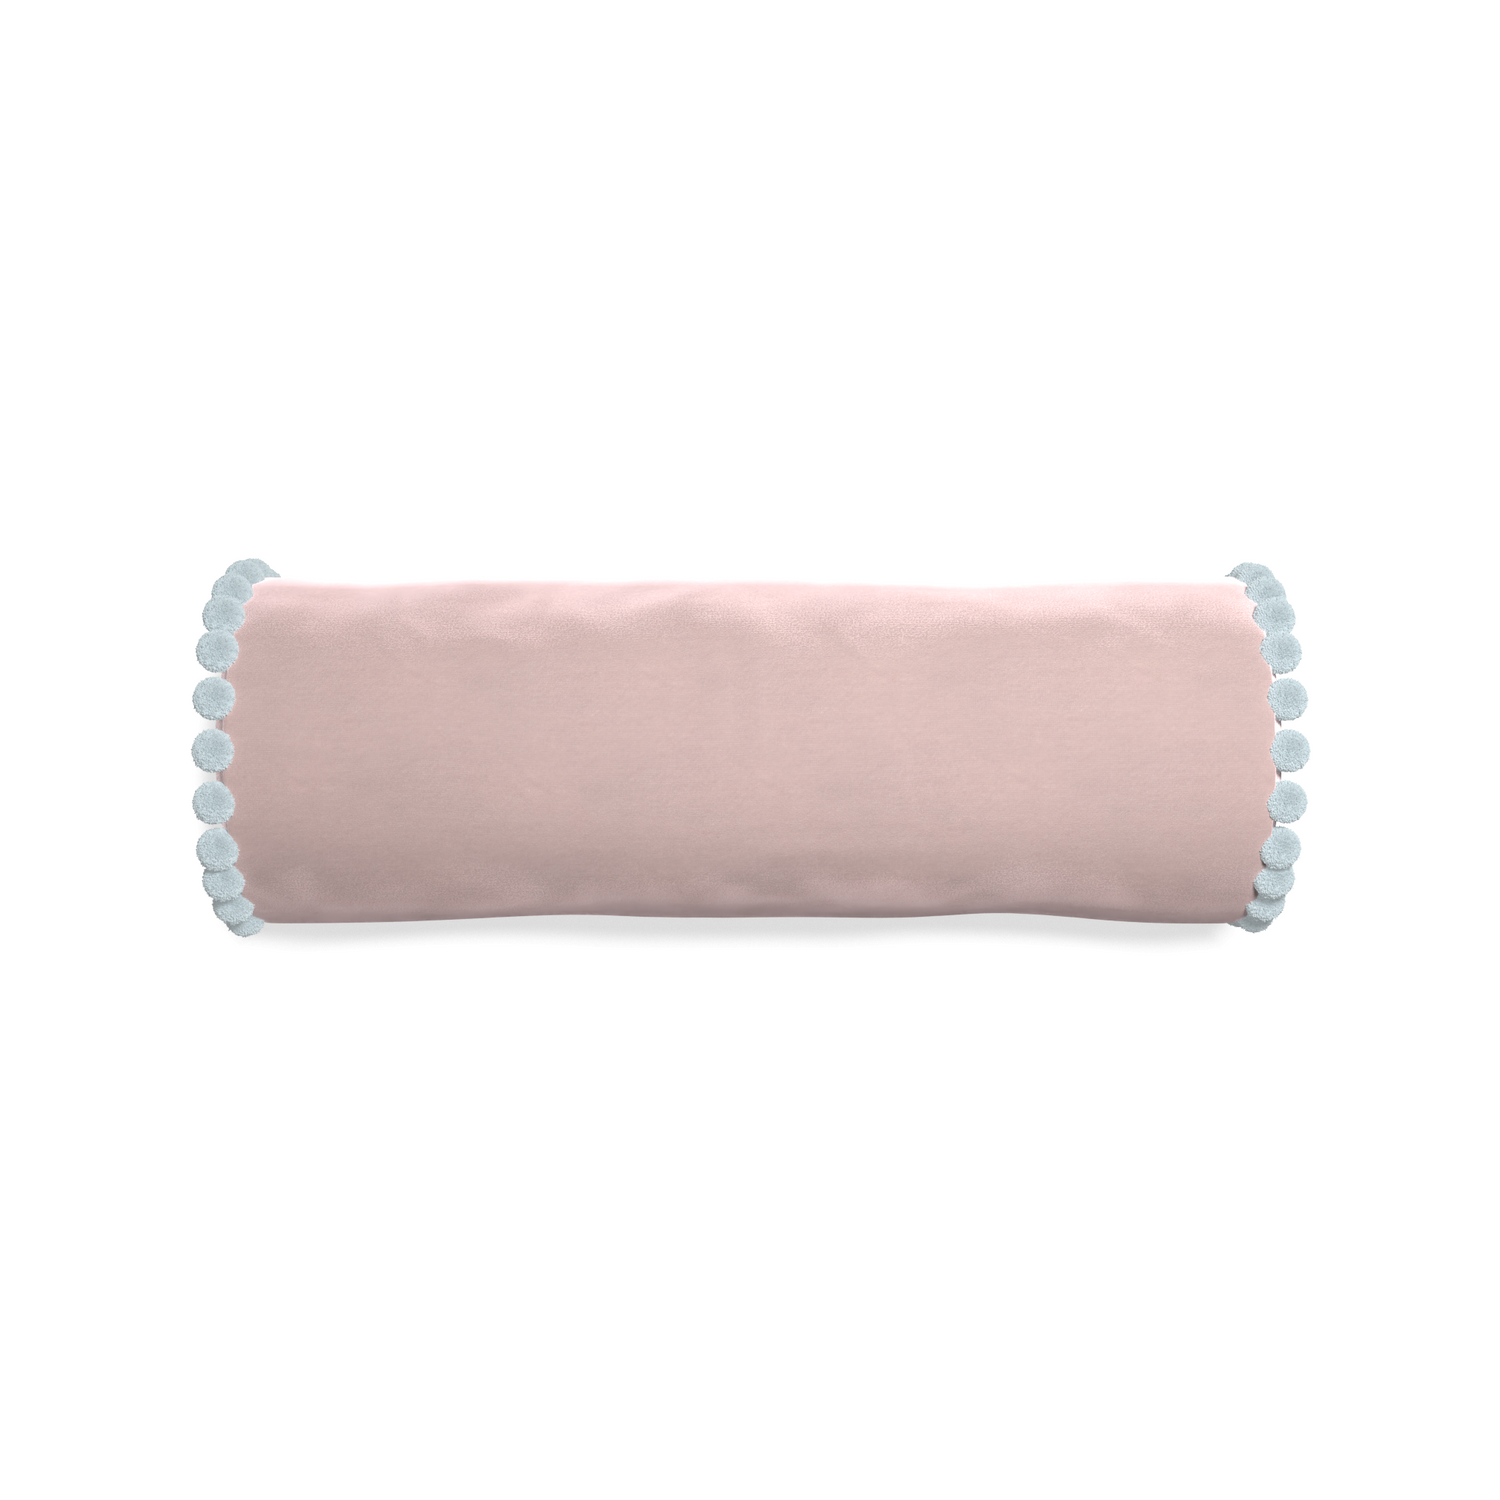 bolster light pink velvet pillow with light blue pom poms